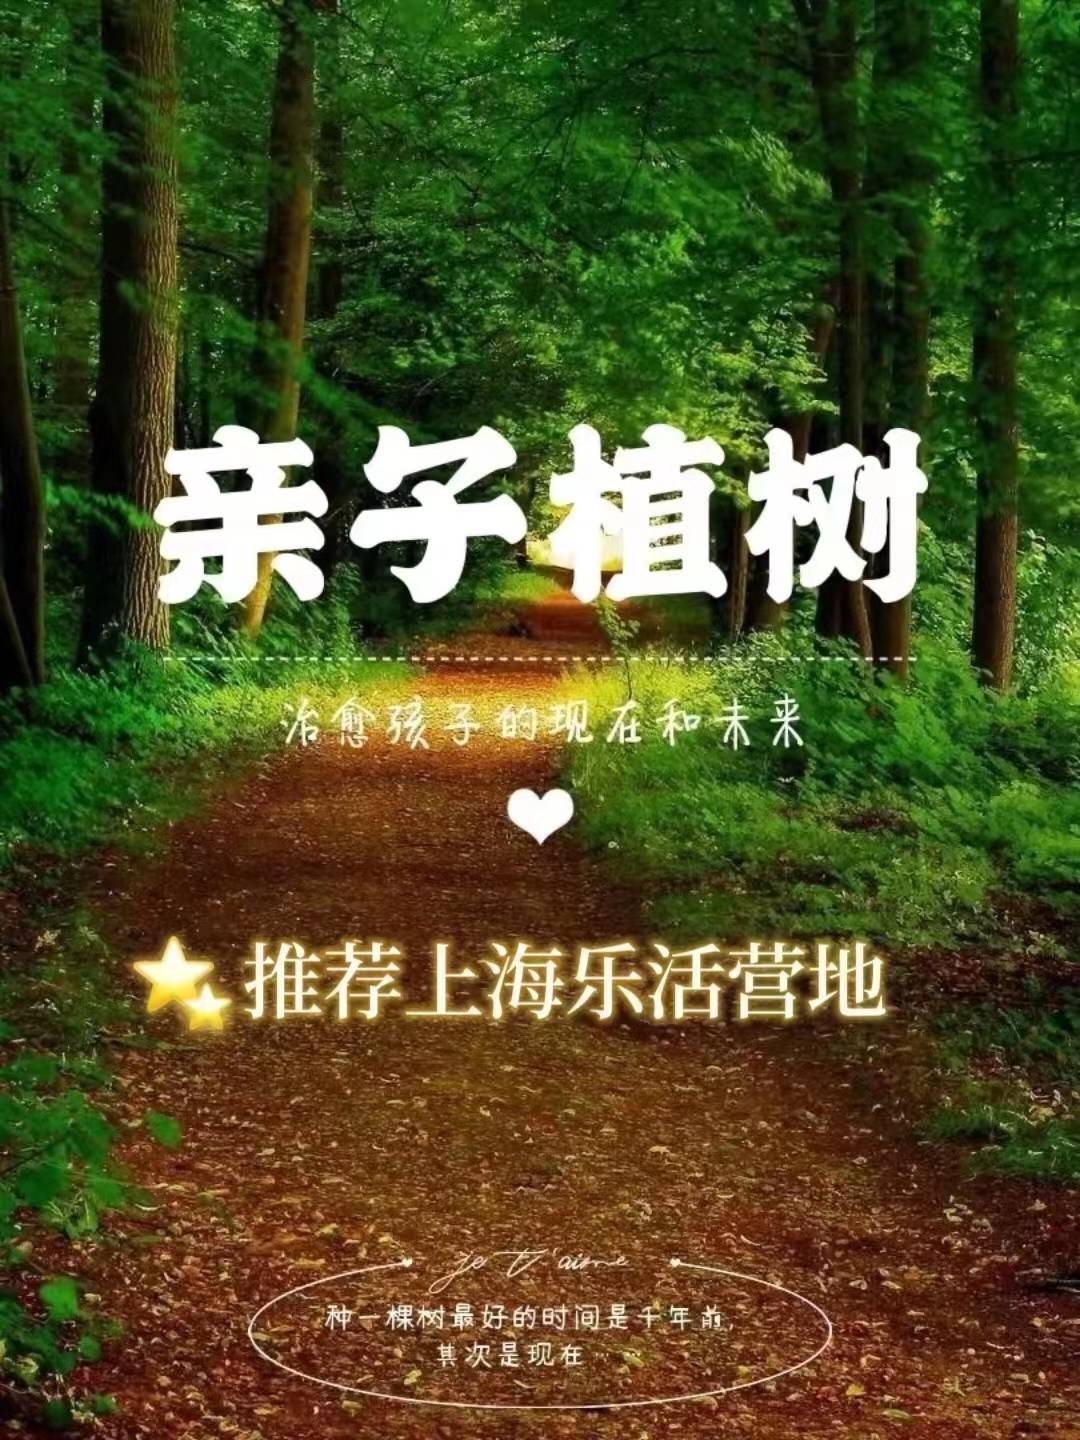 亲子共成长苹果版
:上海植树节 我与小树共成长 亲子植树活动招募中